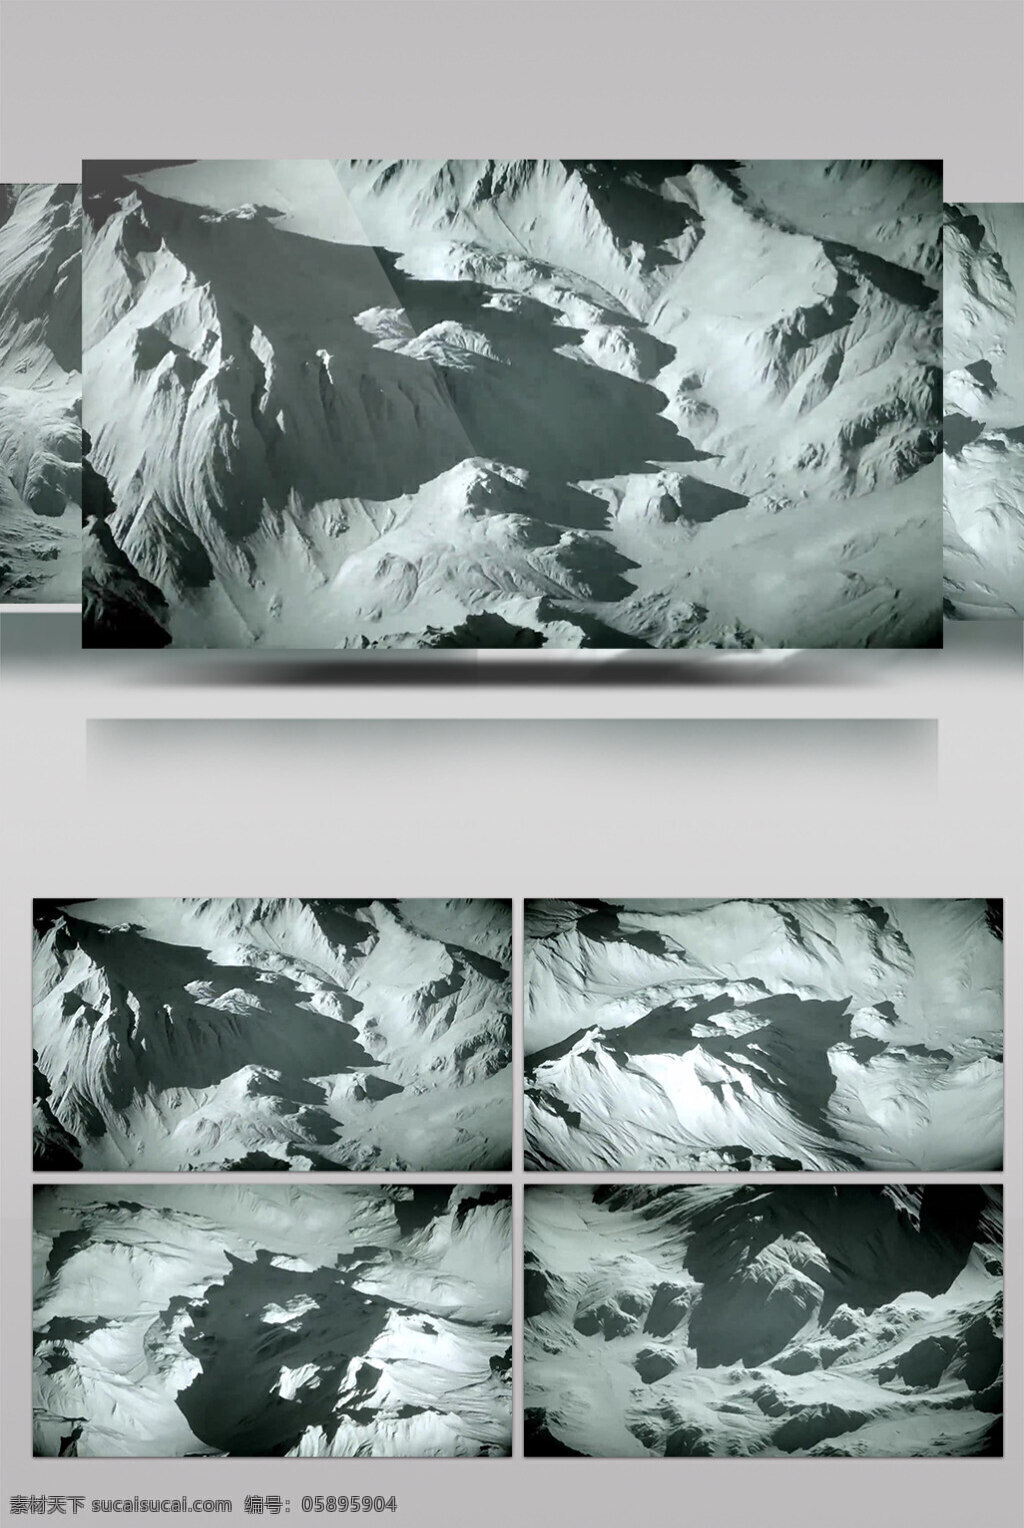 白色 雪山 动态 视频 灰白山 自然景象 生活抽象 画面意境 动态抽象 高清视频素材 特效视频素材